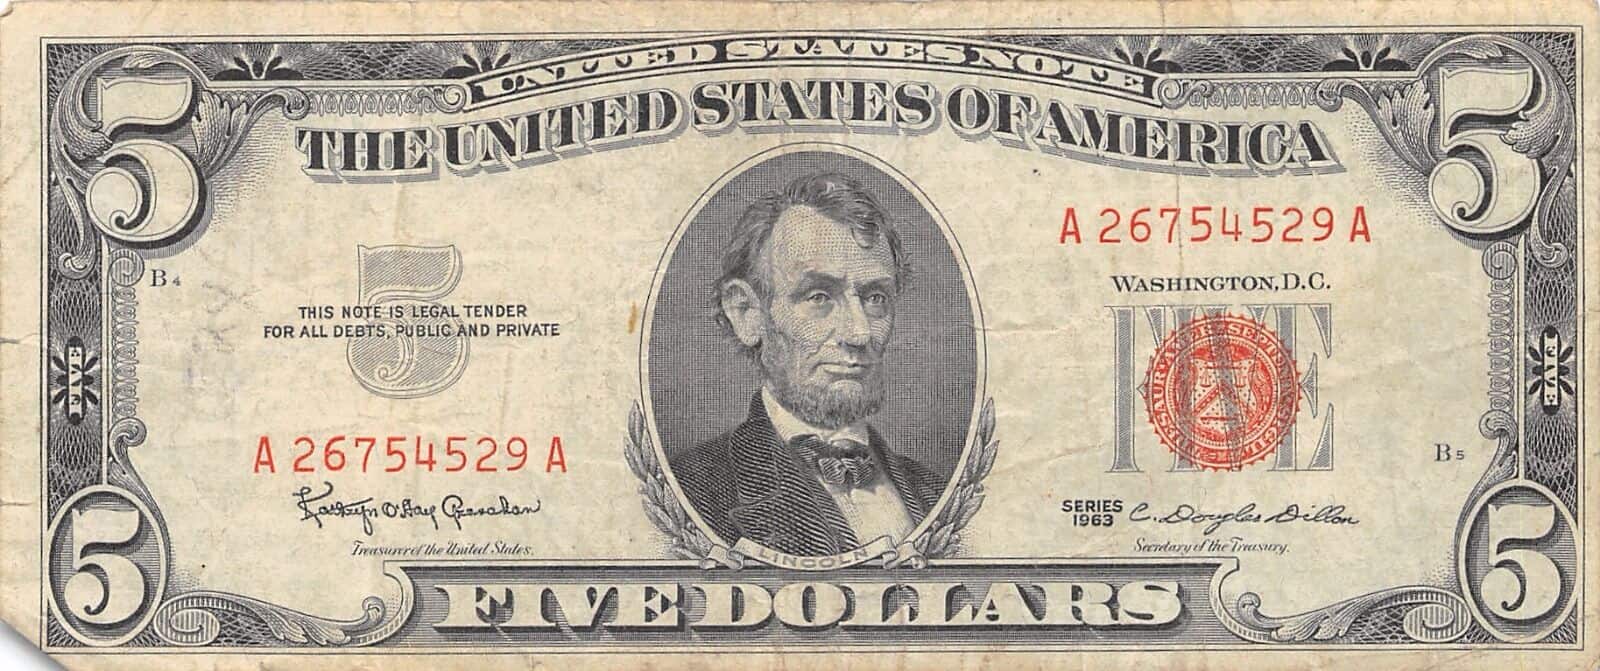 1963 $5 dollar bill value